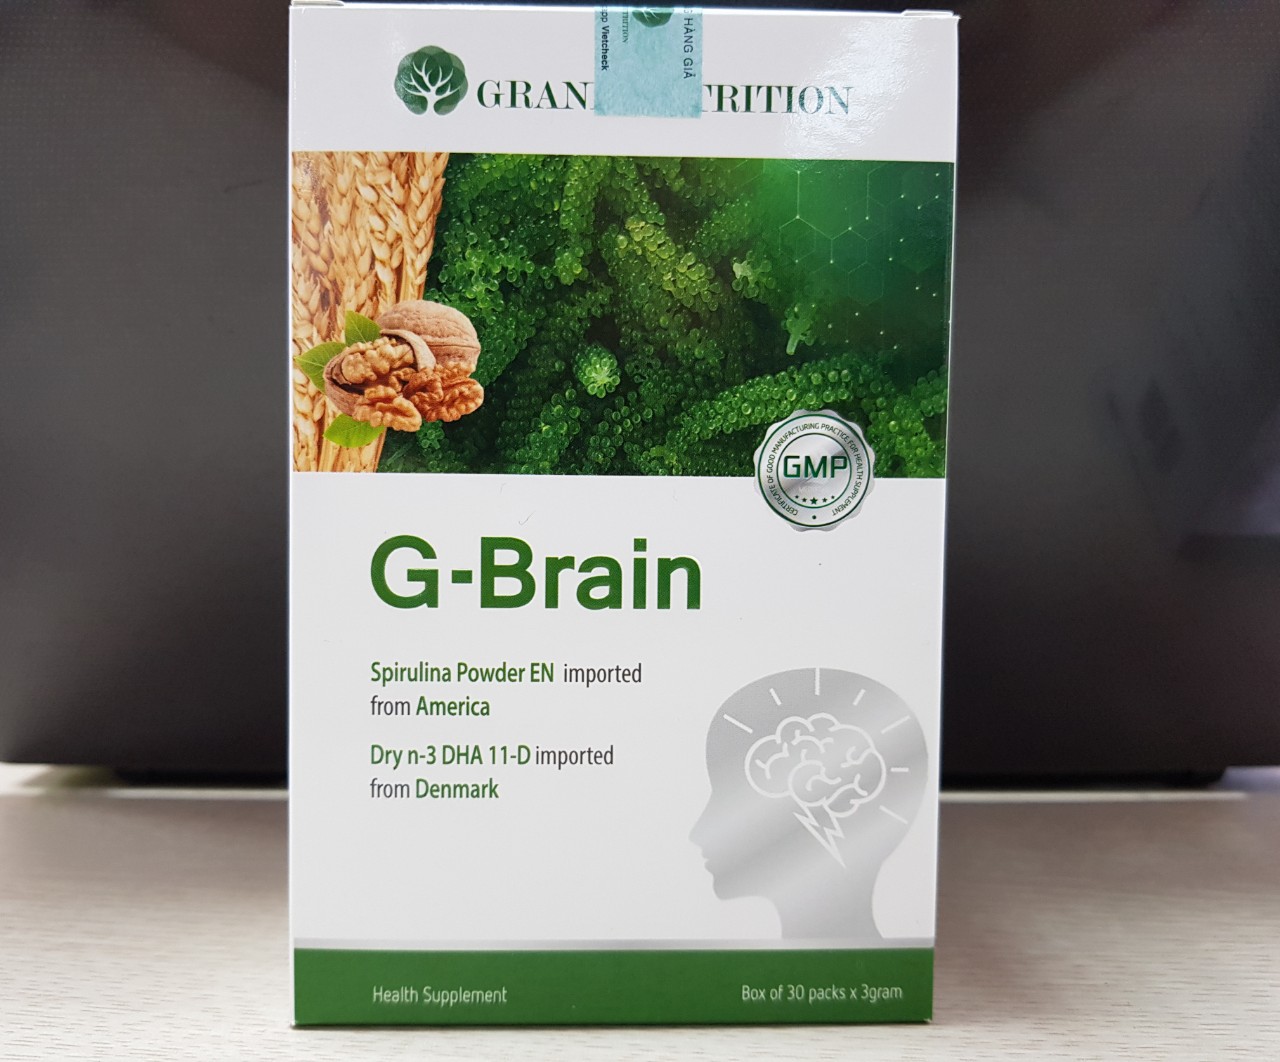 Hai hộp hực phẩm G-Brain bổ sung dinh dưỡng dành cho bé